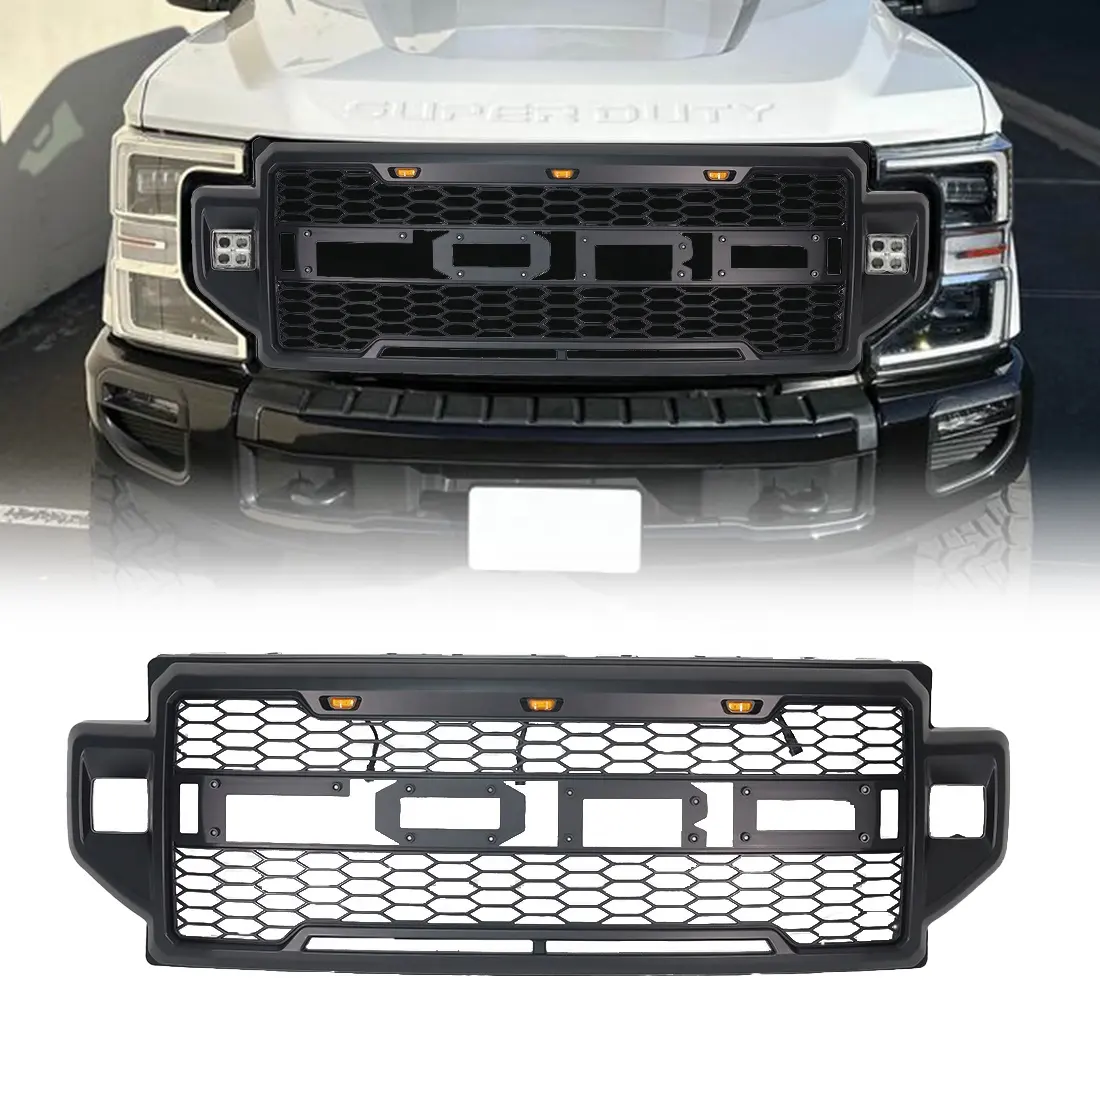 Grade dianteira com luzes e barra de luz, peças off road para carros, outros acessórios, ideal para Ford F250 2020-2022